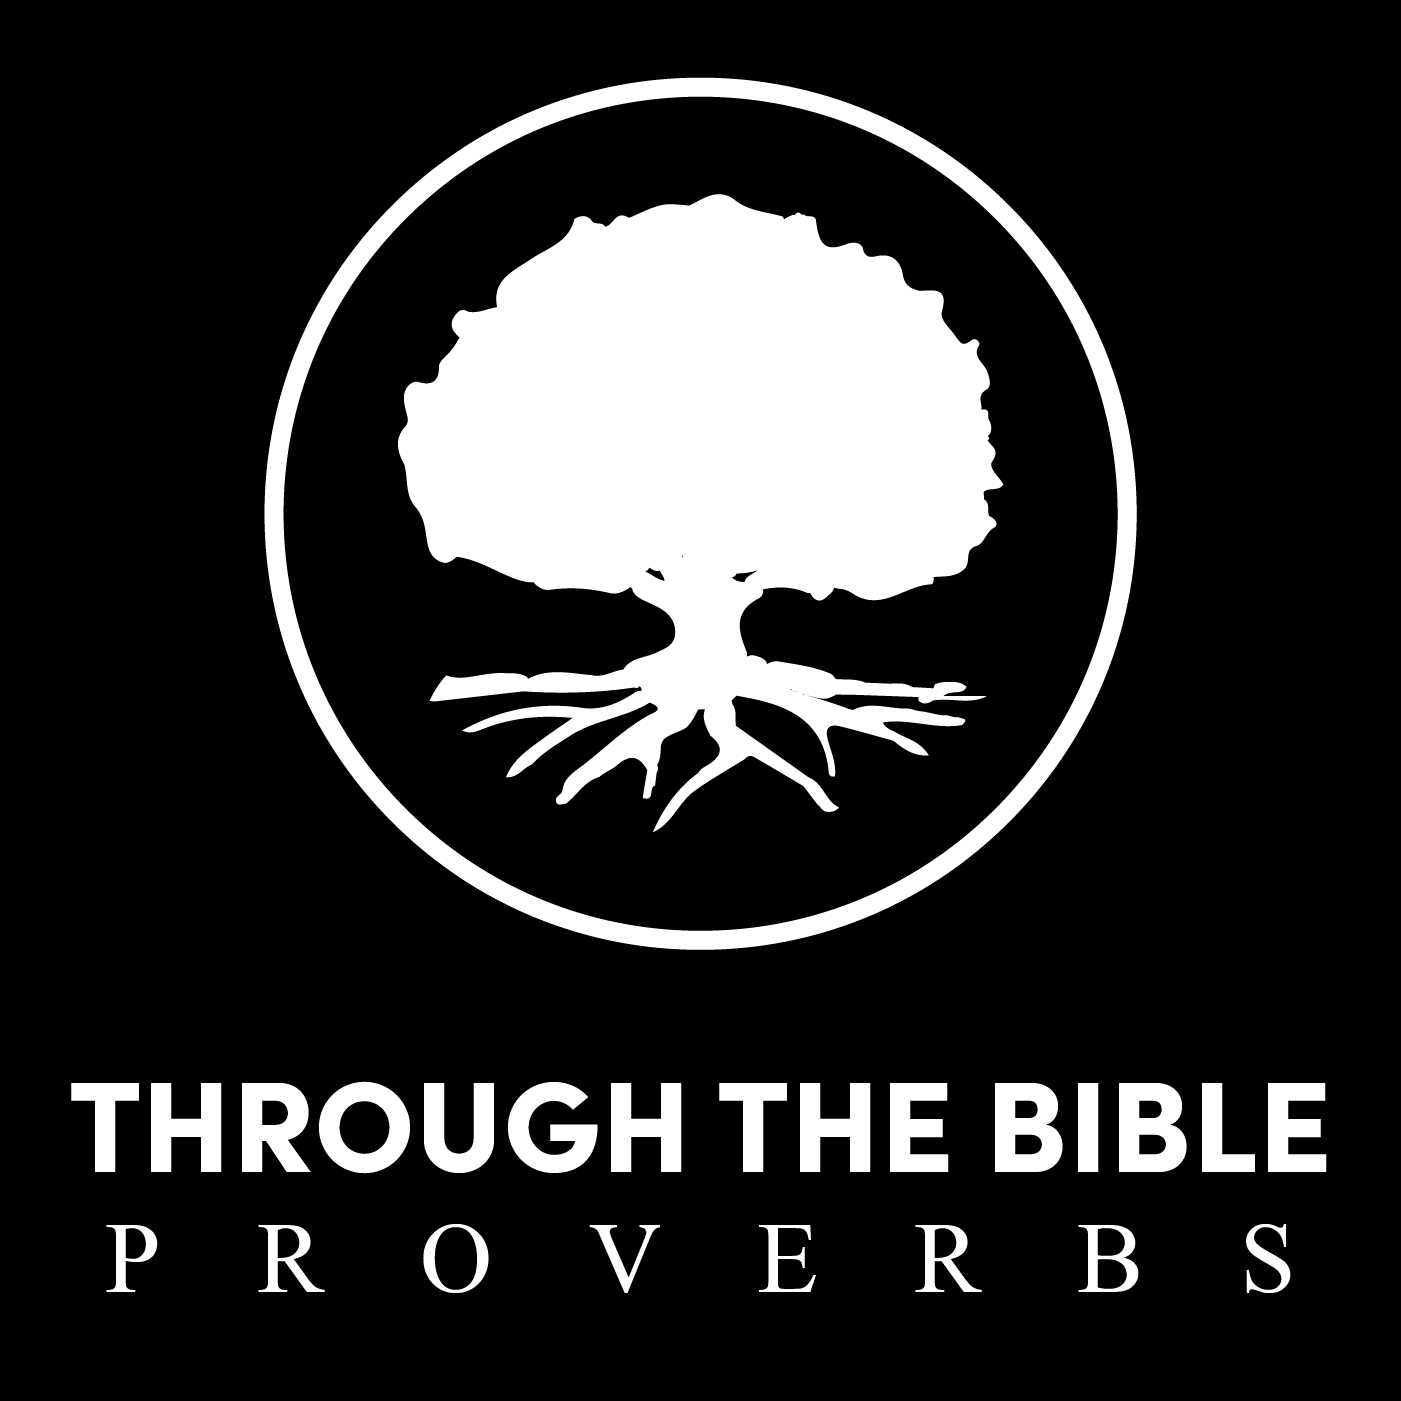 Through the Bible - Proverbs